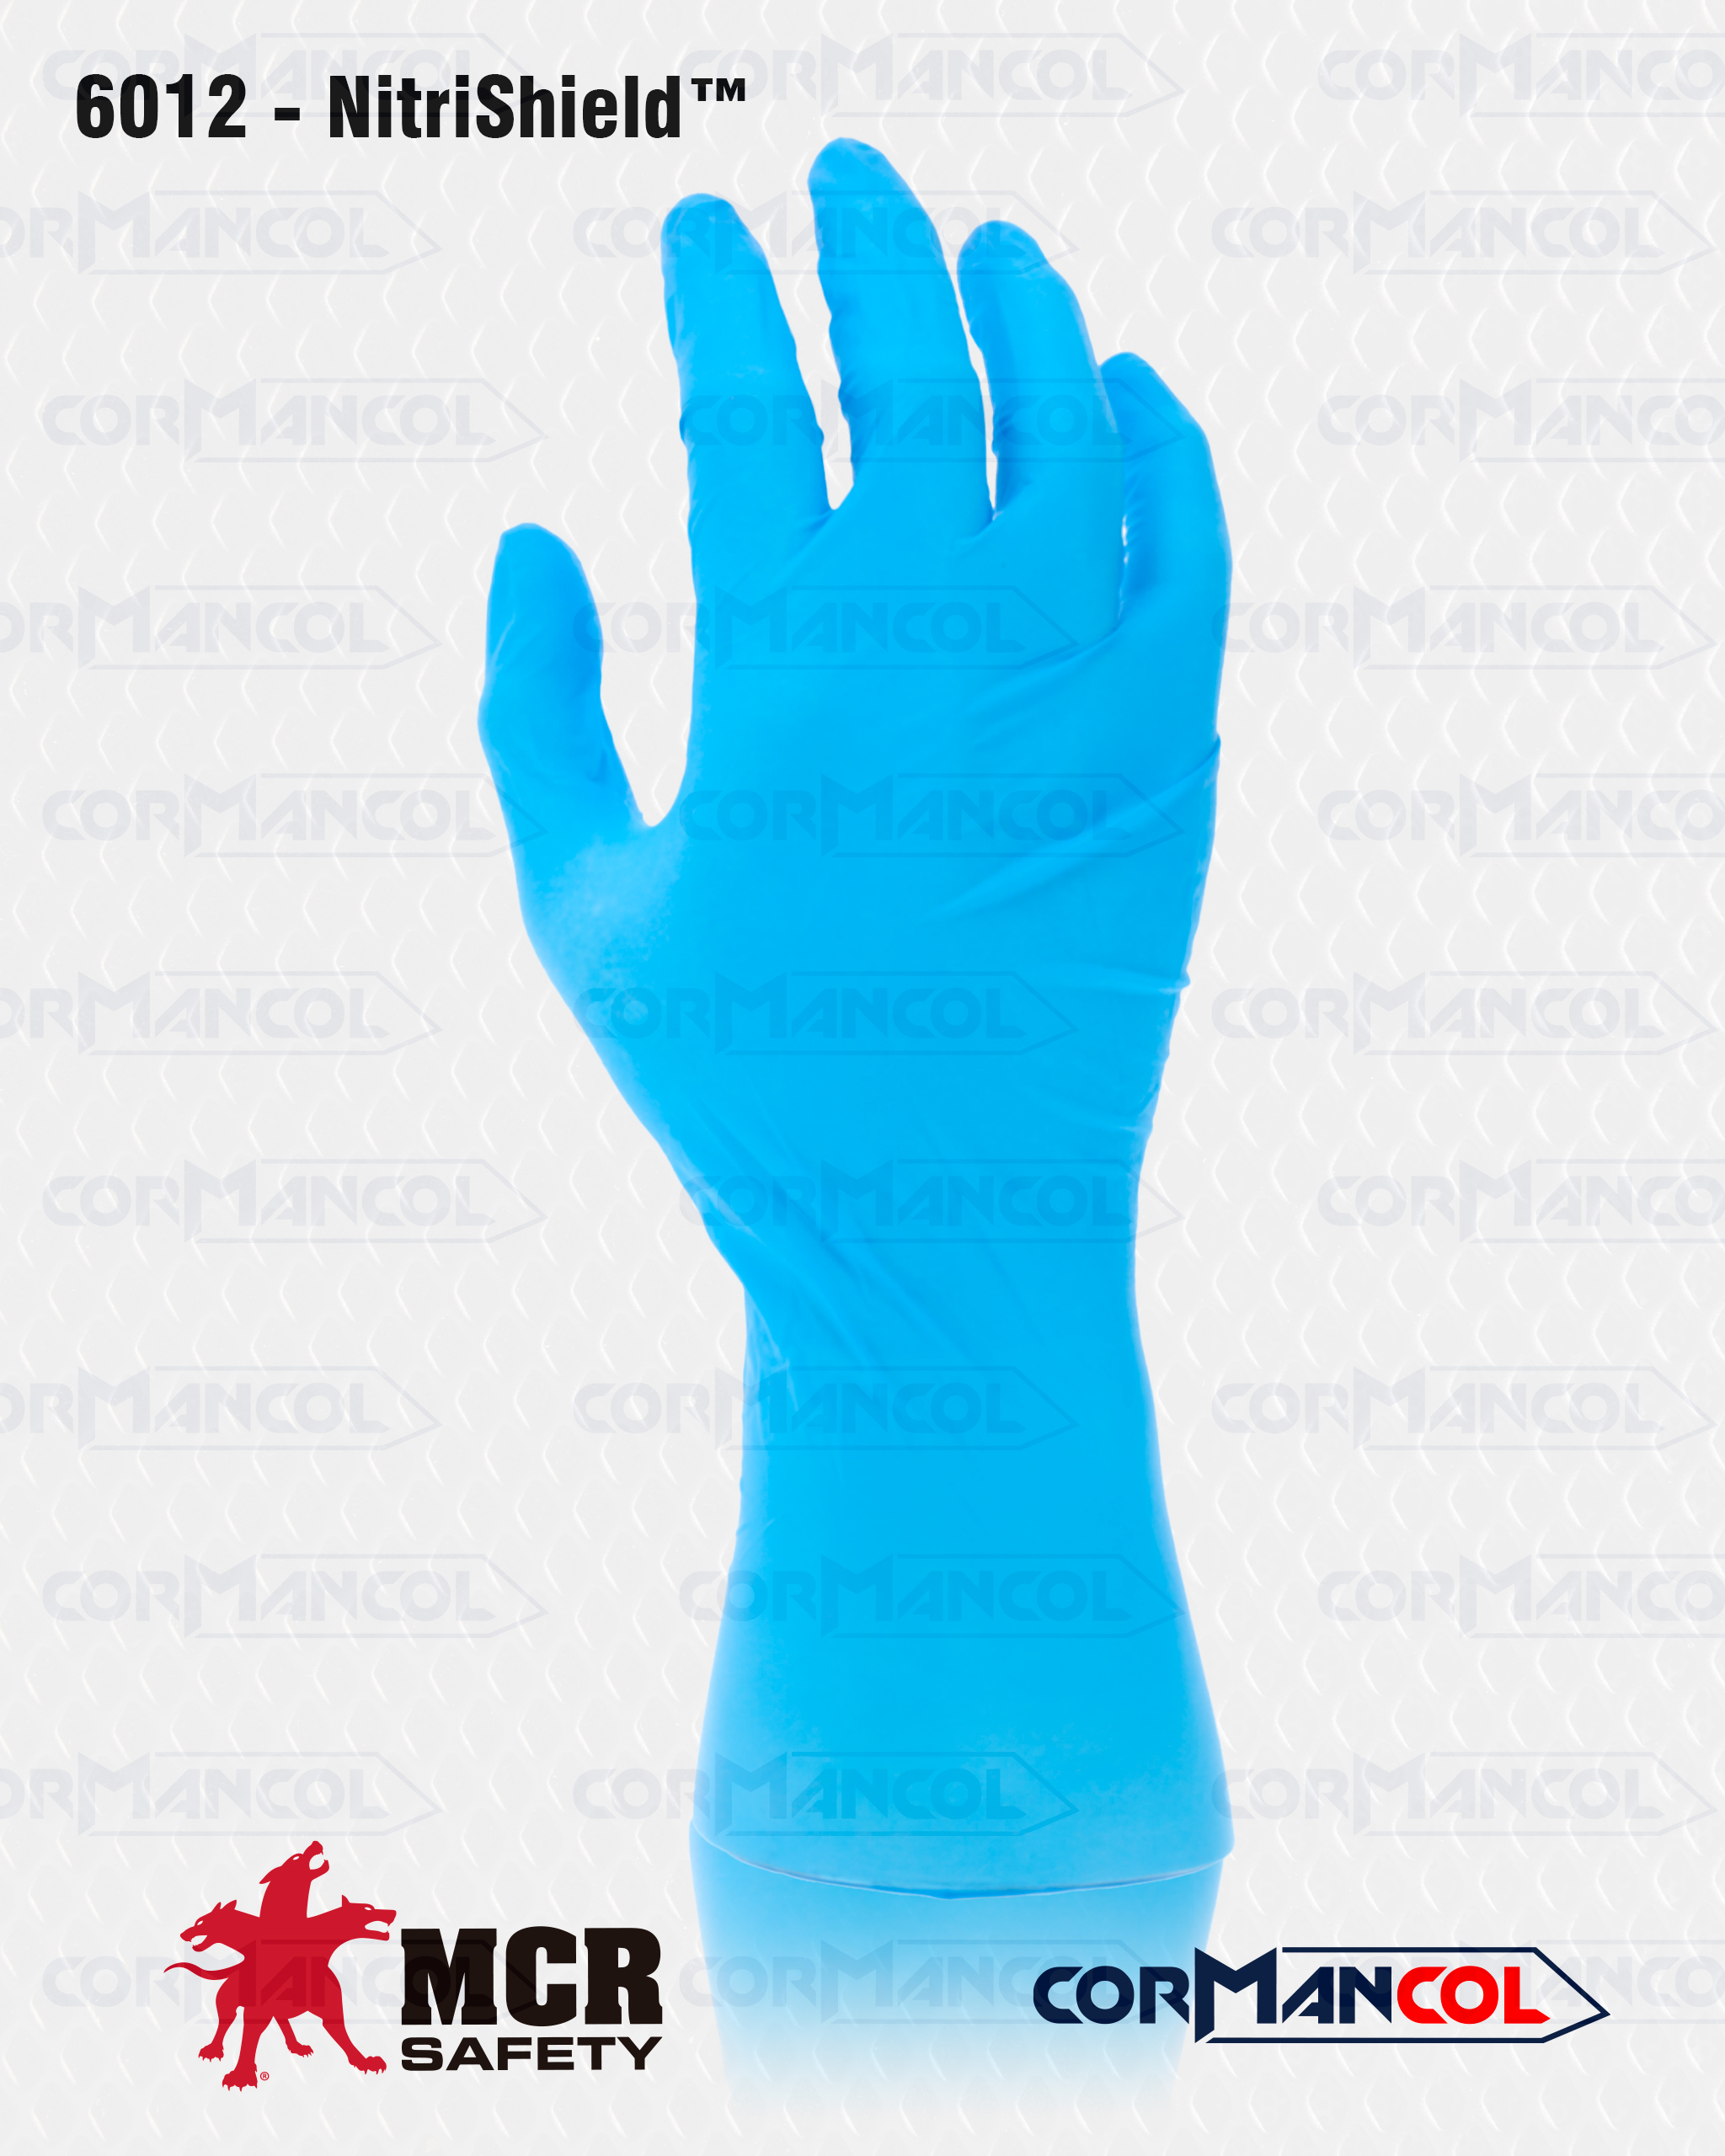 Comprar guantes de látex sin polvo 100 unidades · Marycel